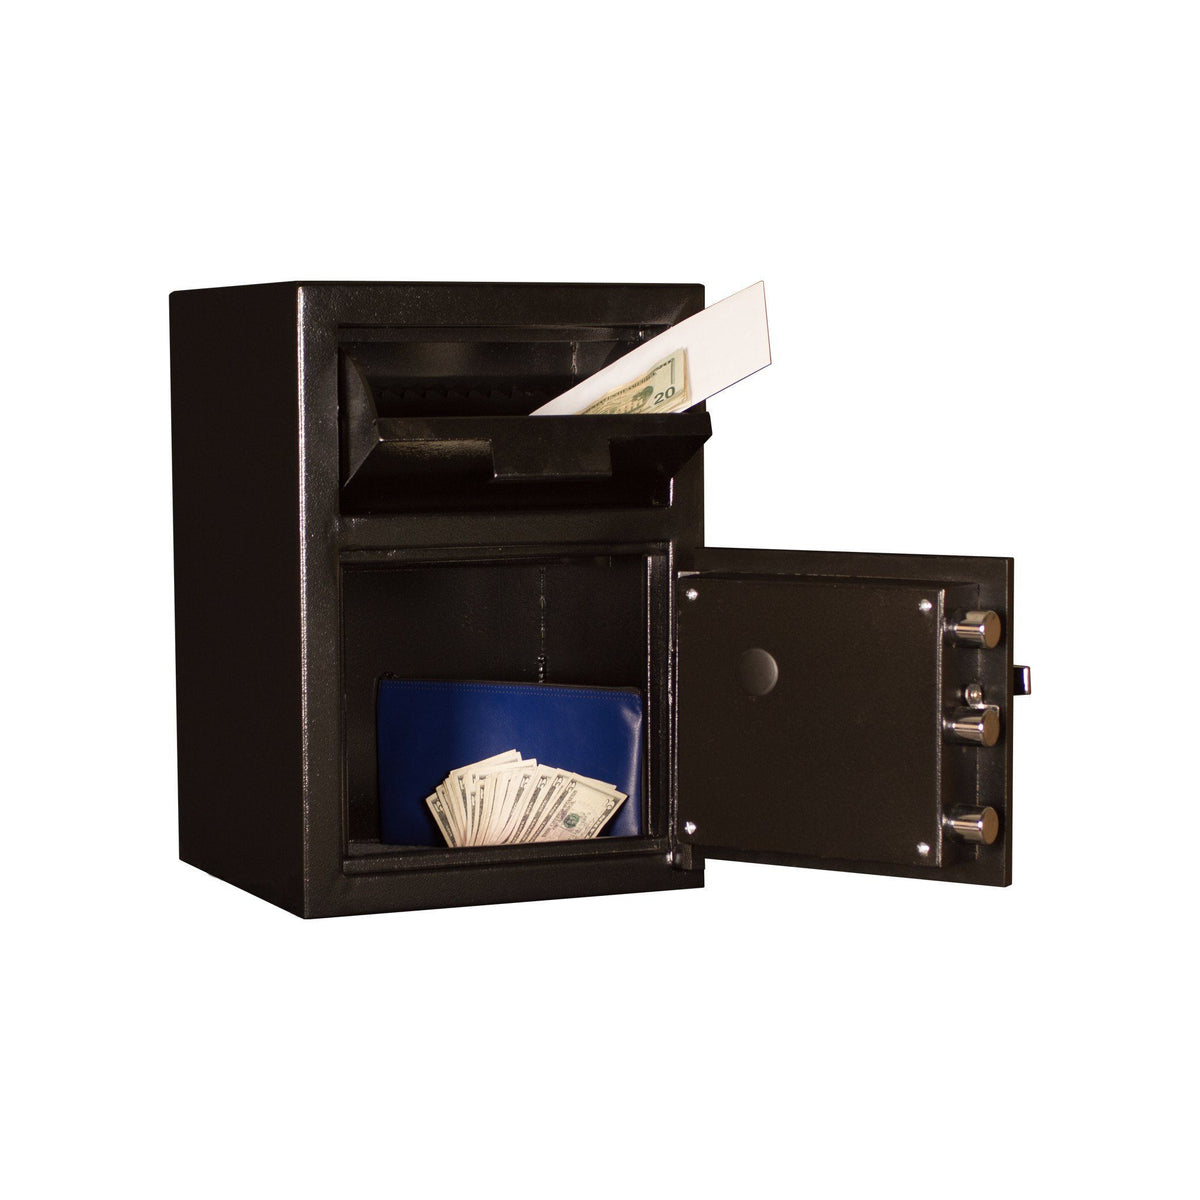 Front Loading Deposit Safes - Tracker DS201414-DSR Front Load Deposit Safe With Electronic Lock